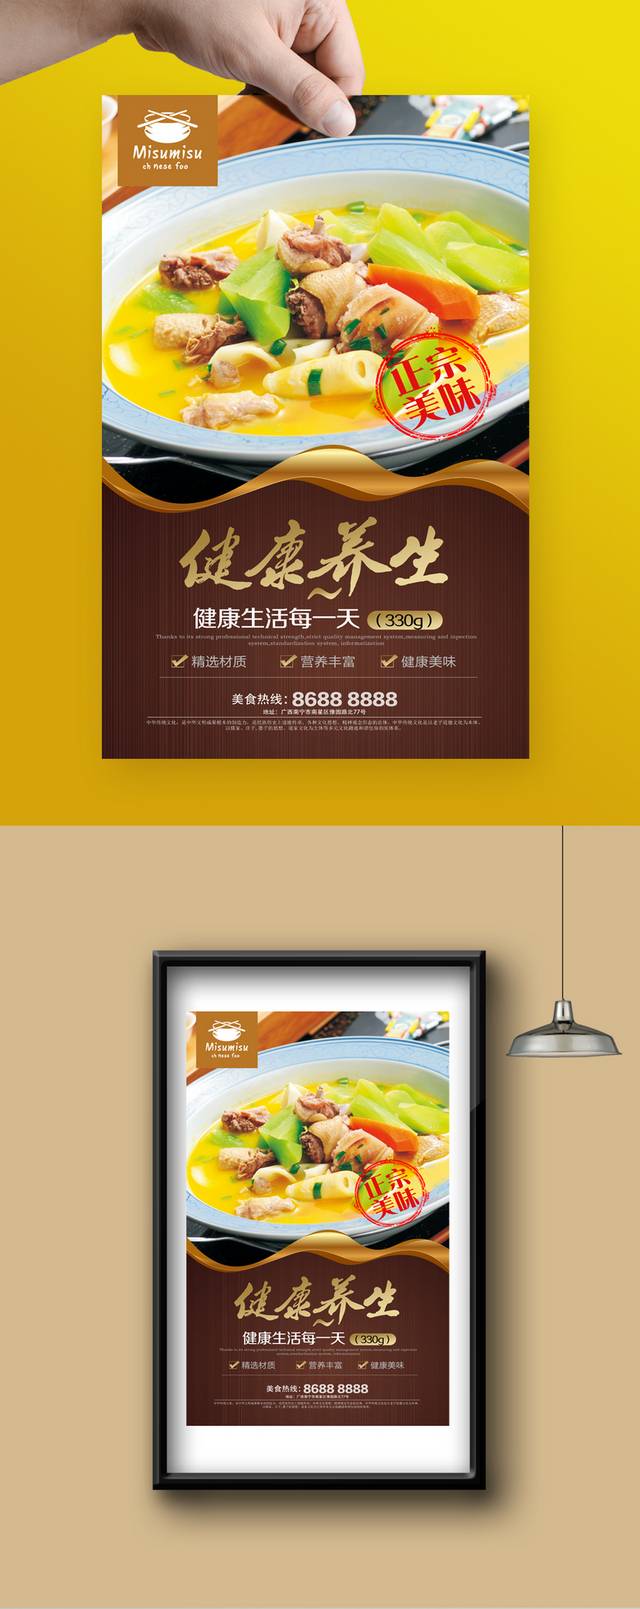 高清鹅肝宣传海报设计